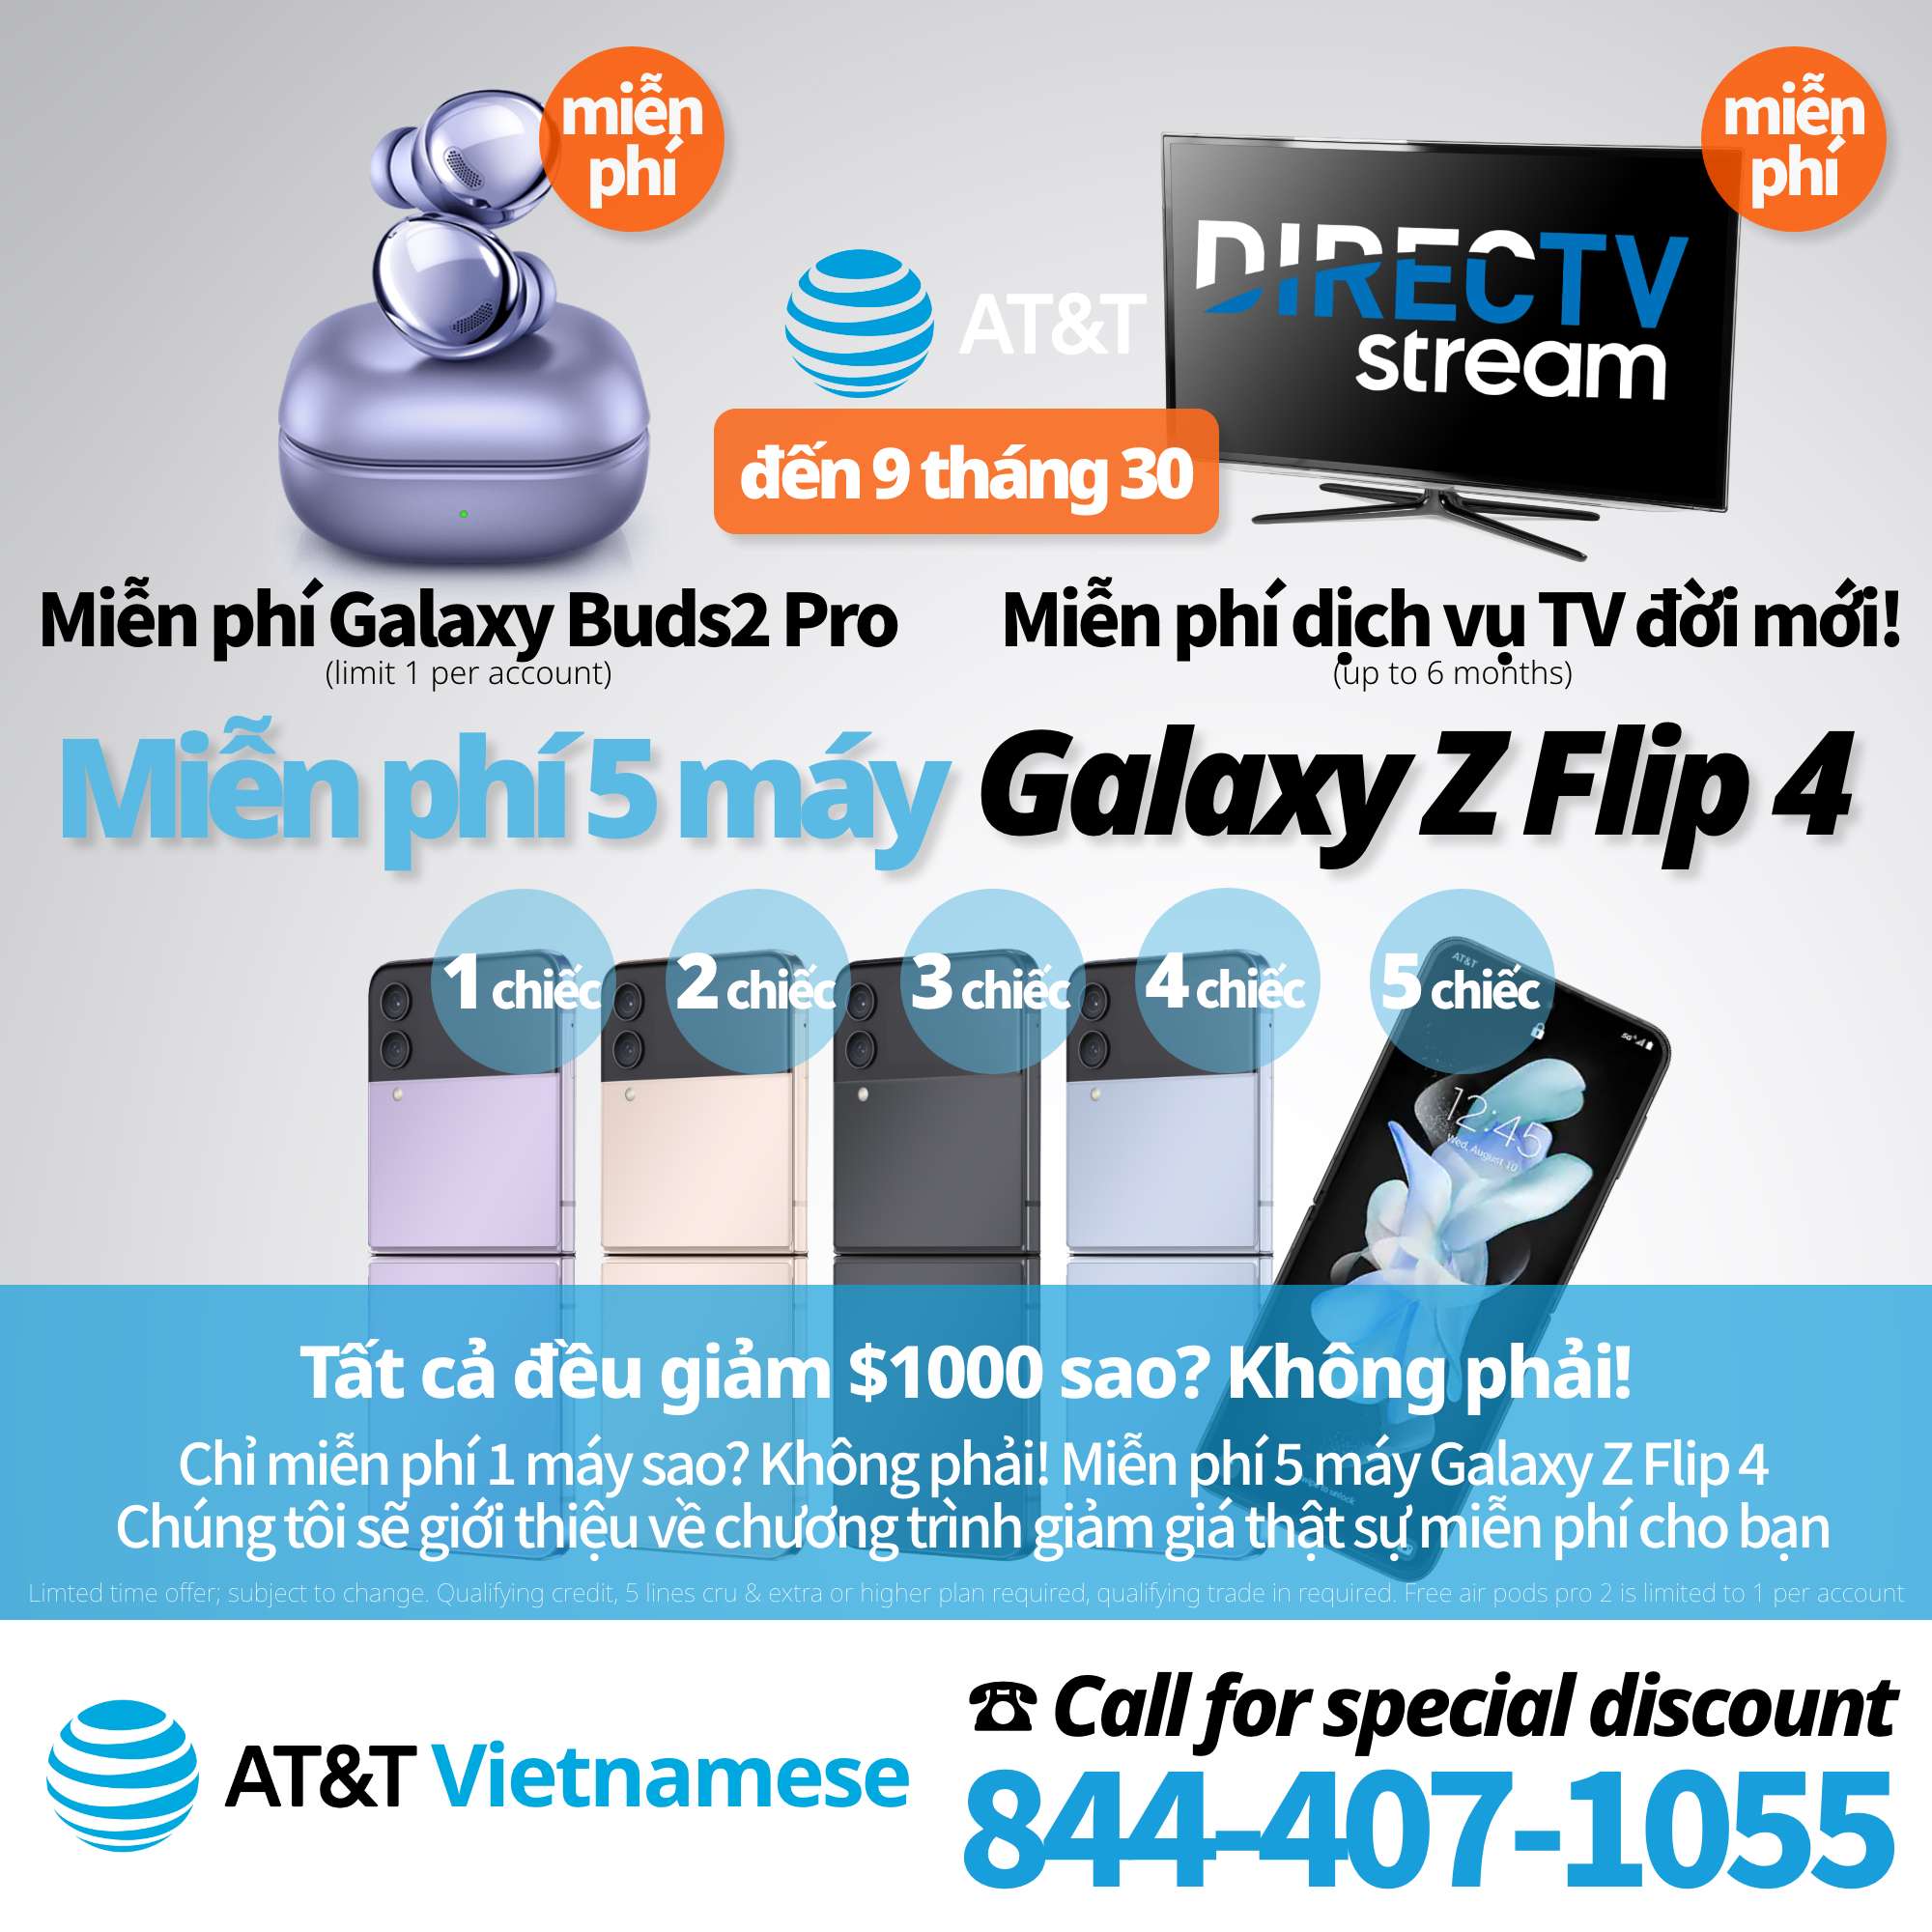 AT&T Đại lý ủy quyền dùng tiếng Việt - Ưu đãi hấp dẫn cho iPhone, Ưu đãi hấp dẫn cho Galaxy, AT&T Internet, AT&T Customer Service